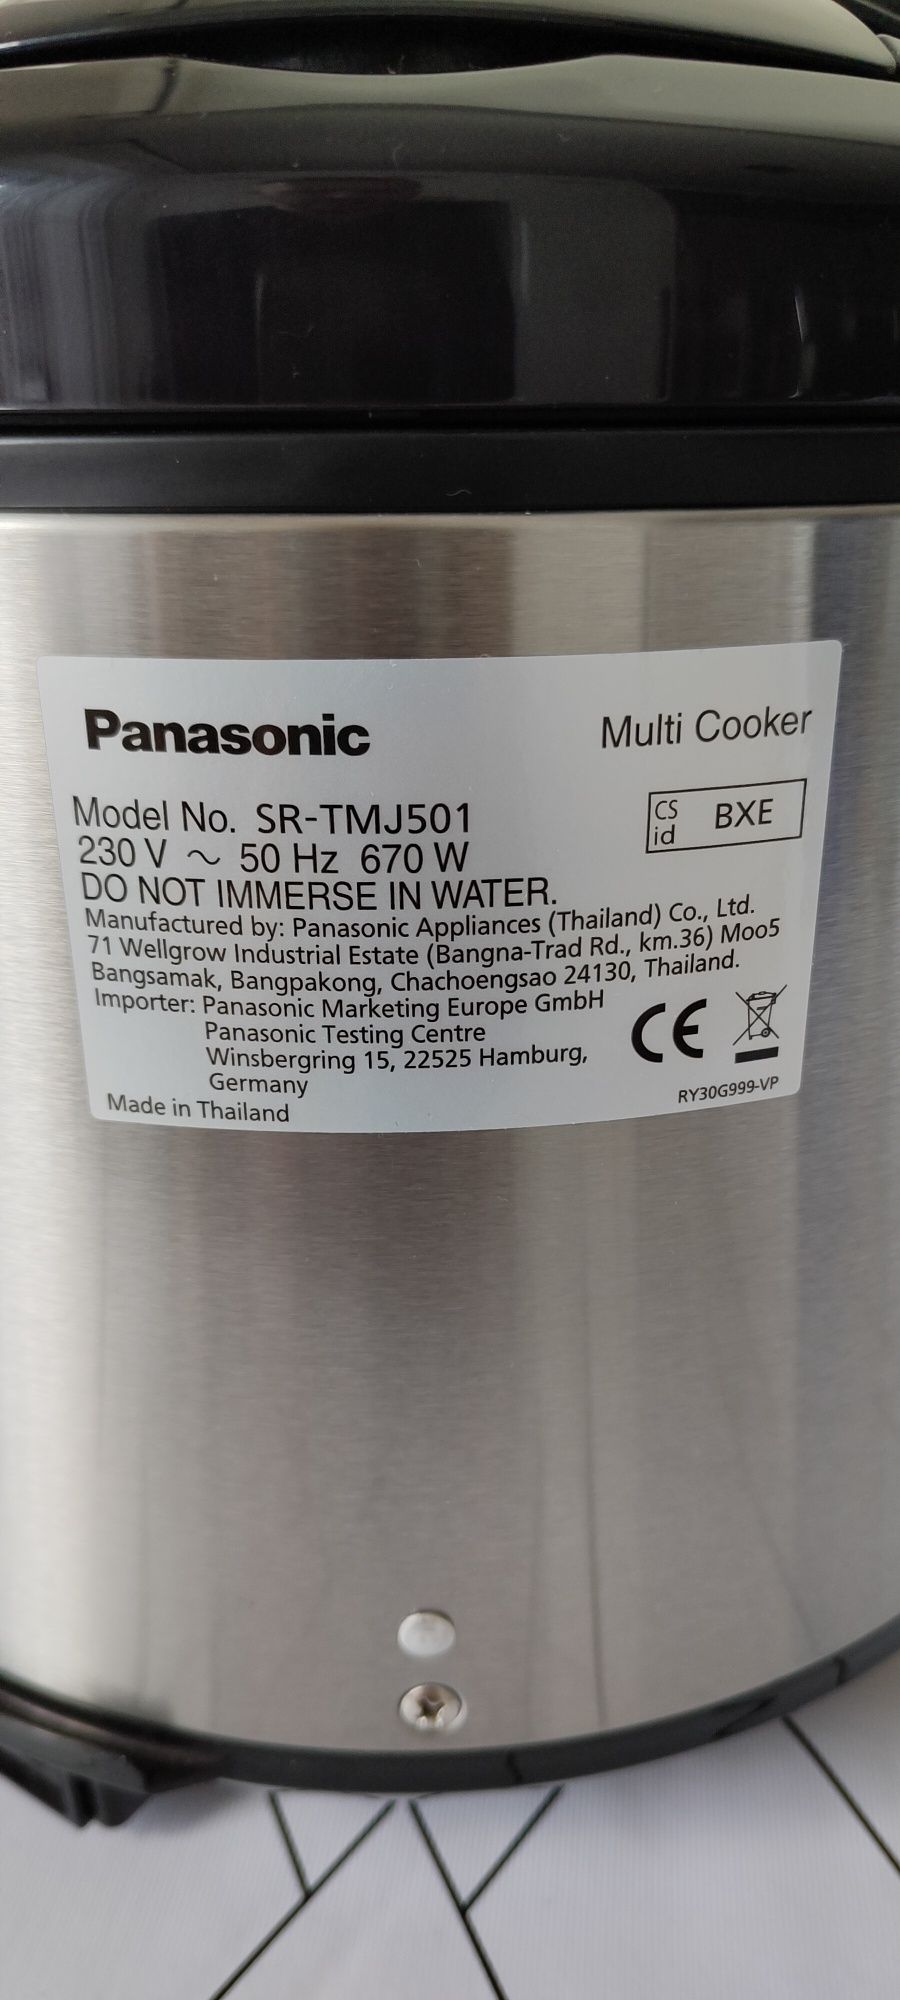 Multi Cooker Panasonic SR-TMJ501